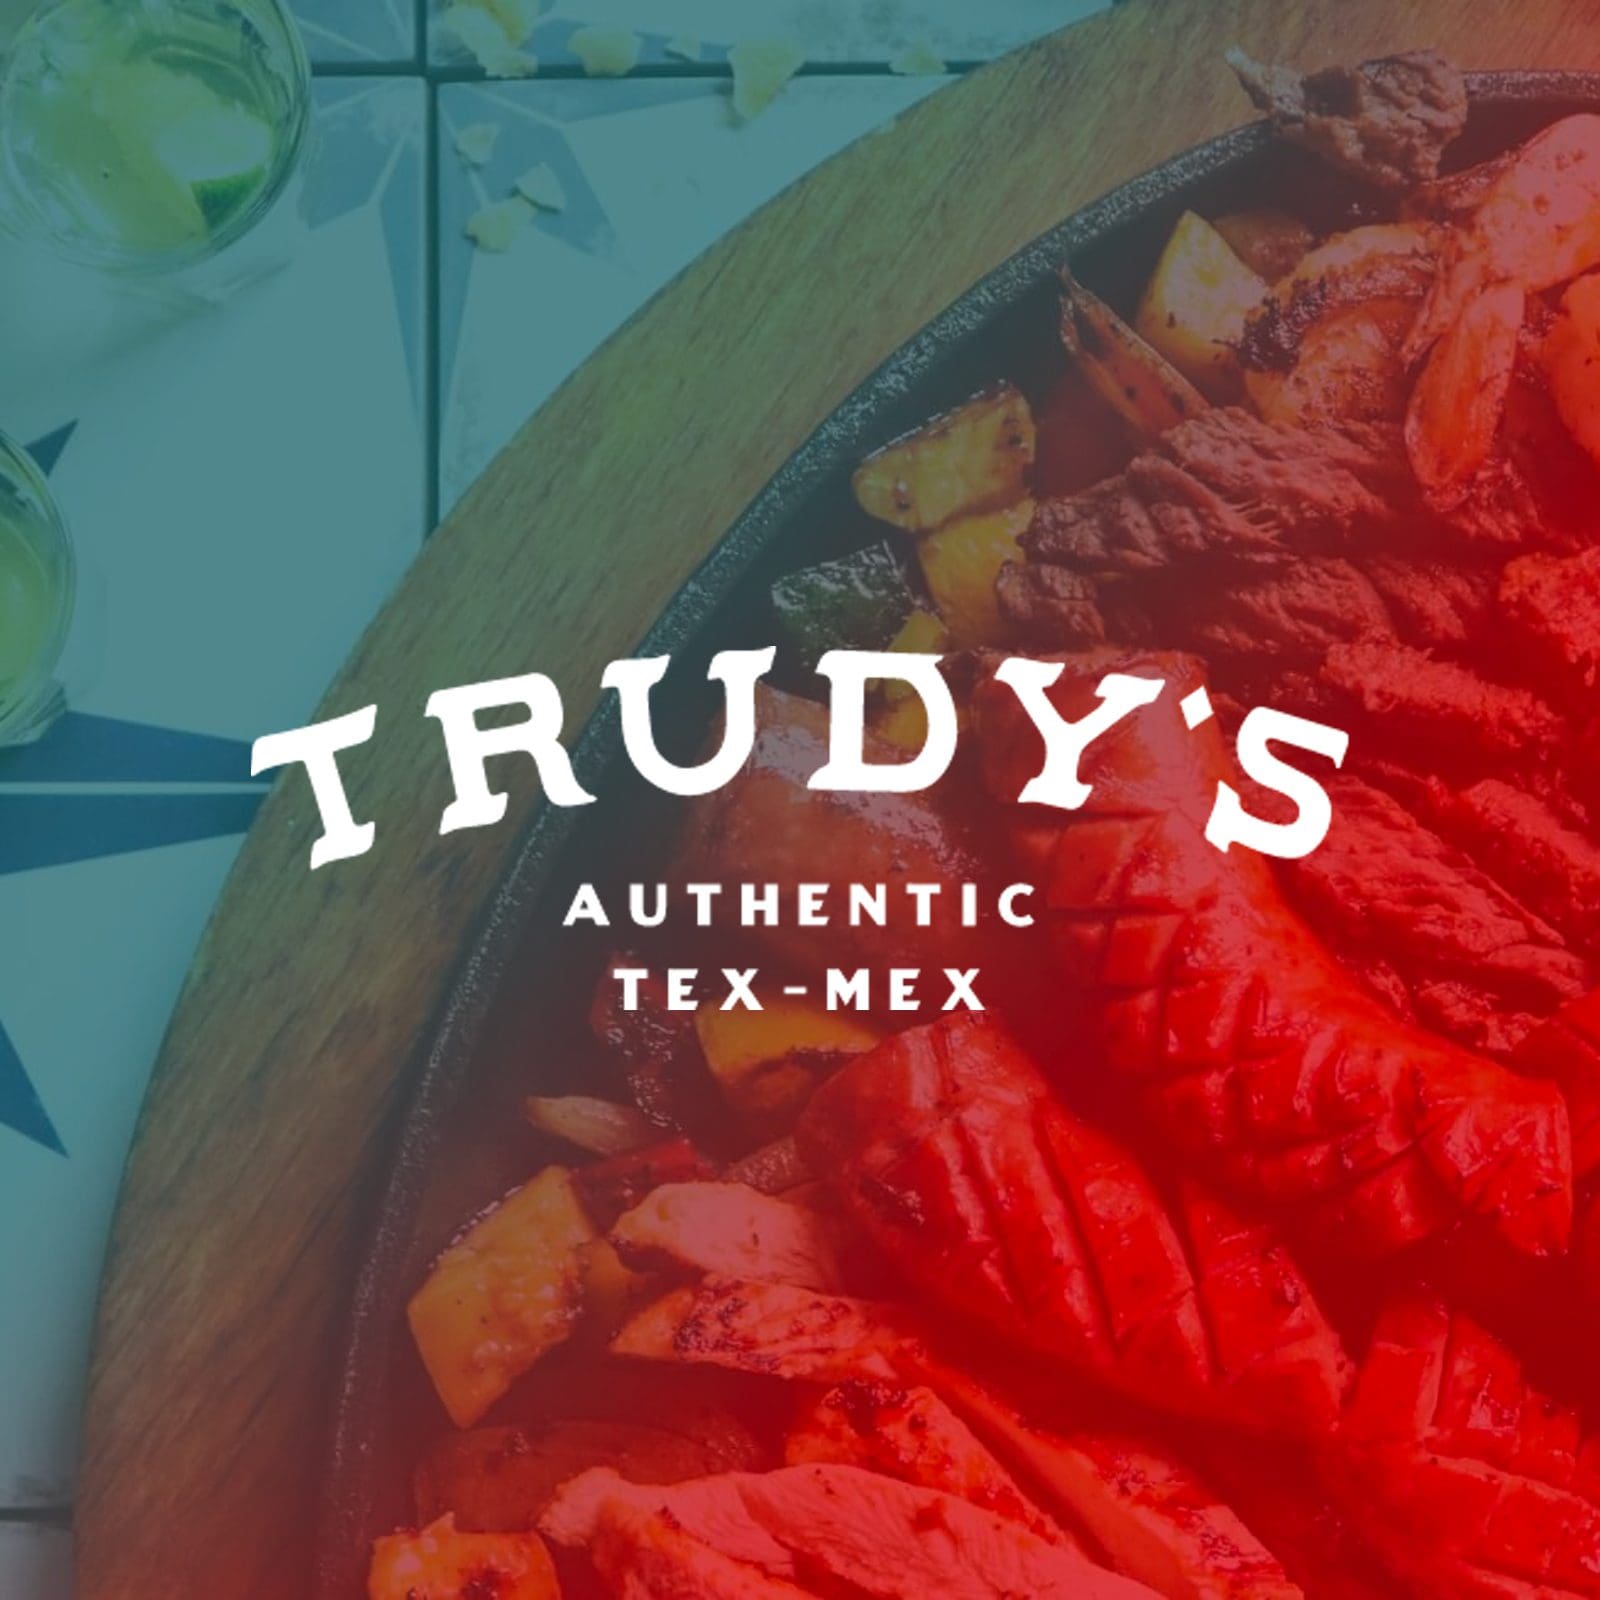 Website Design in Nashville - Trudy's